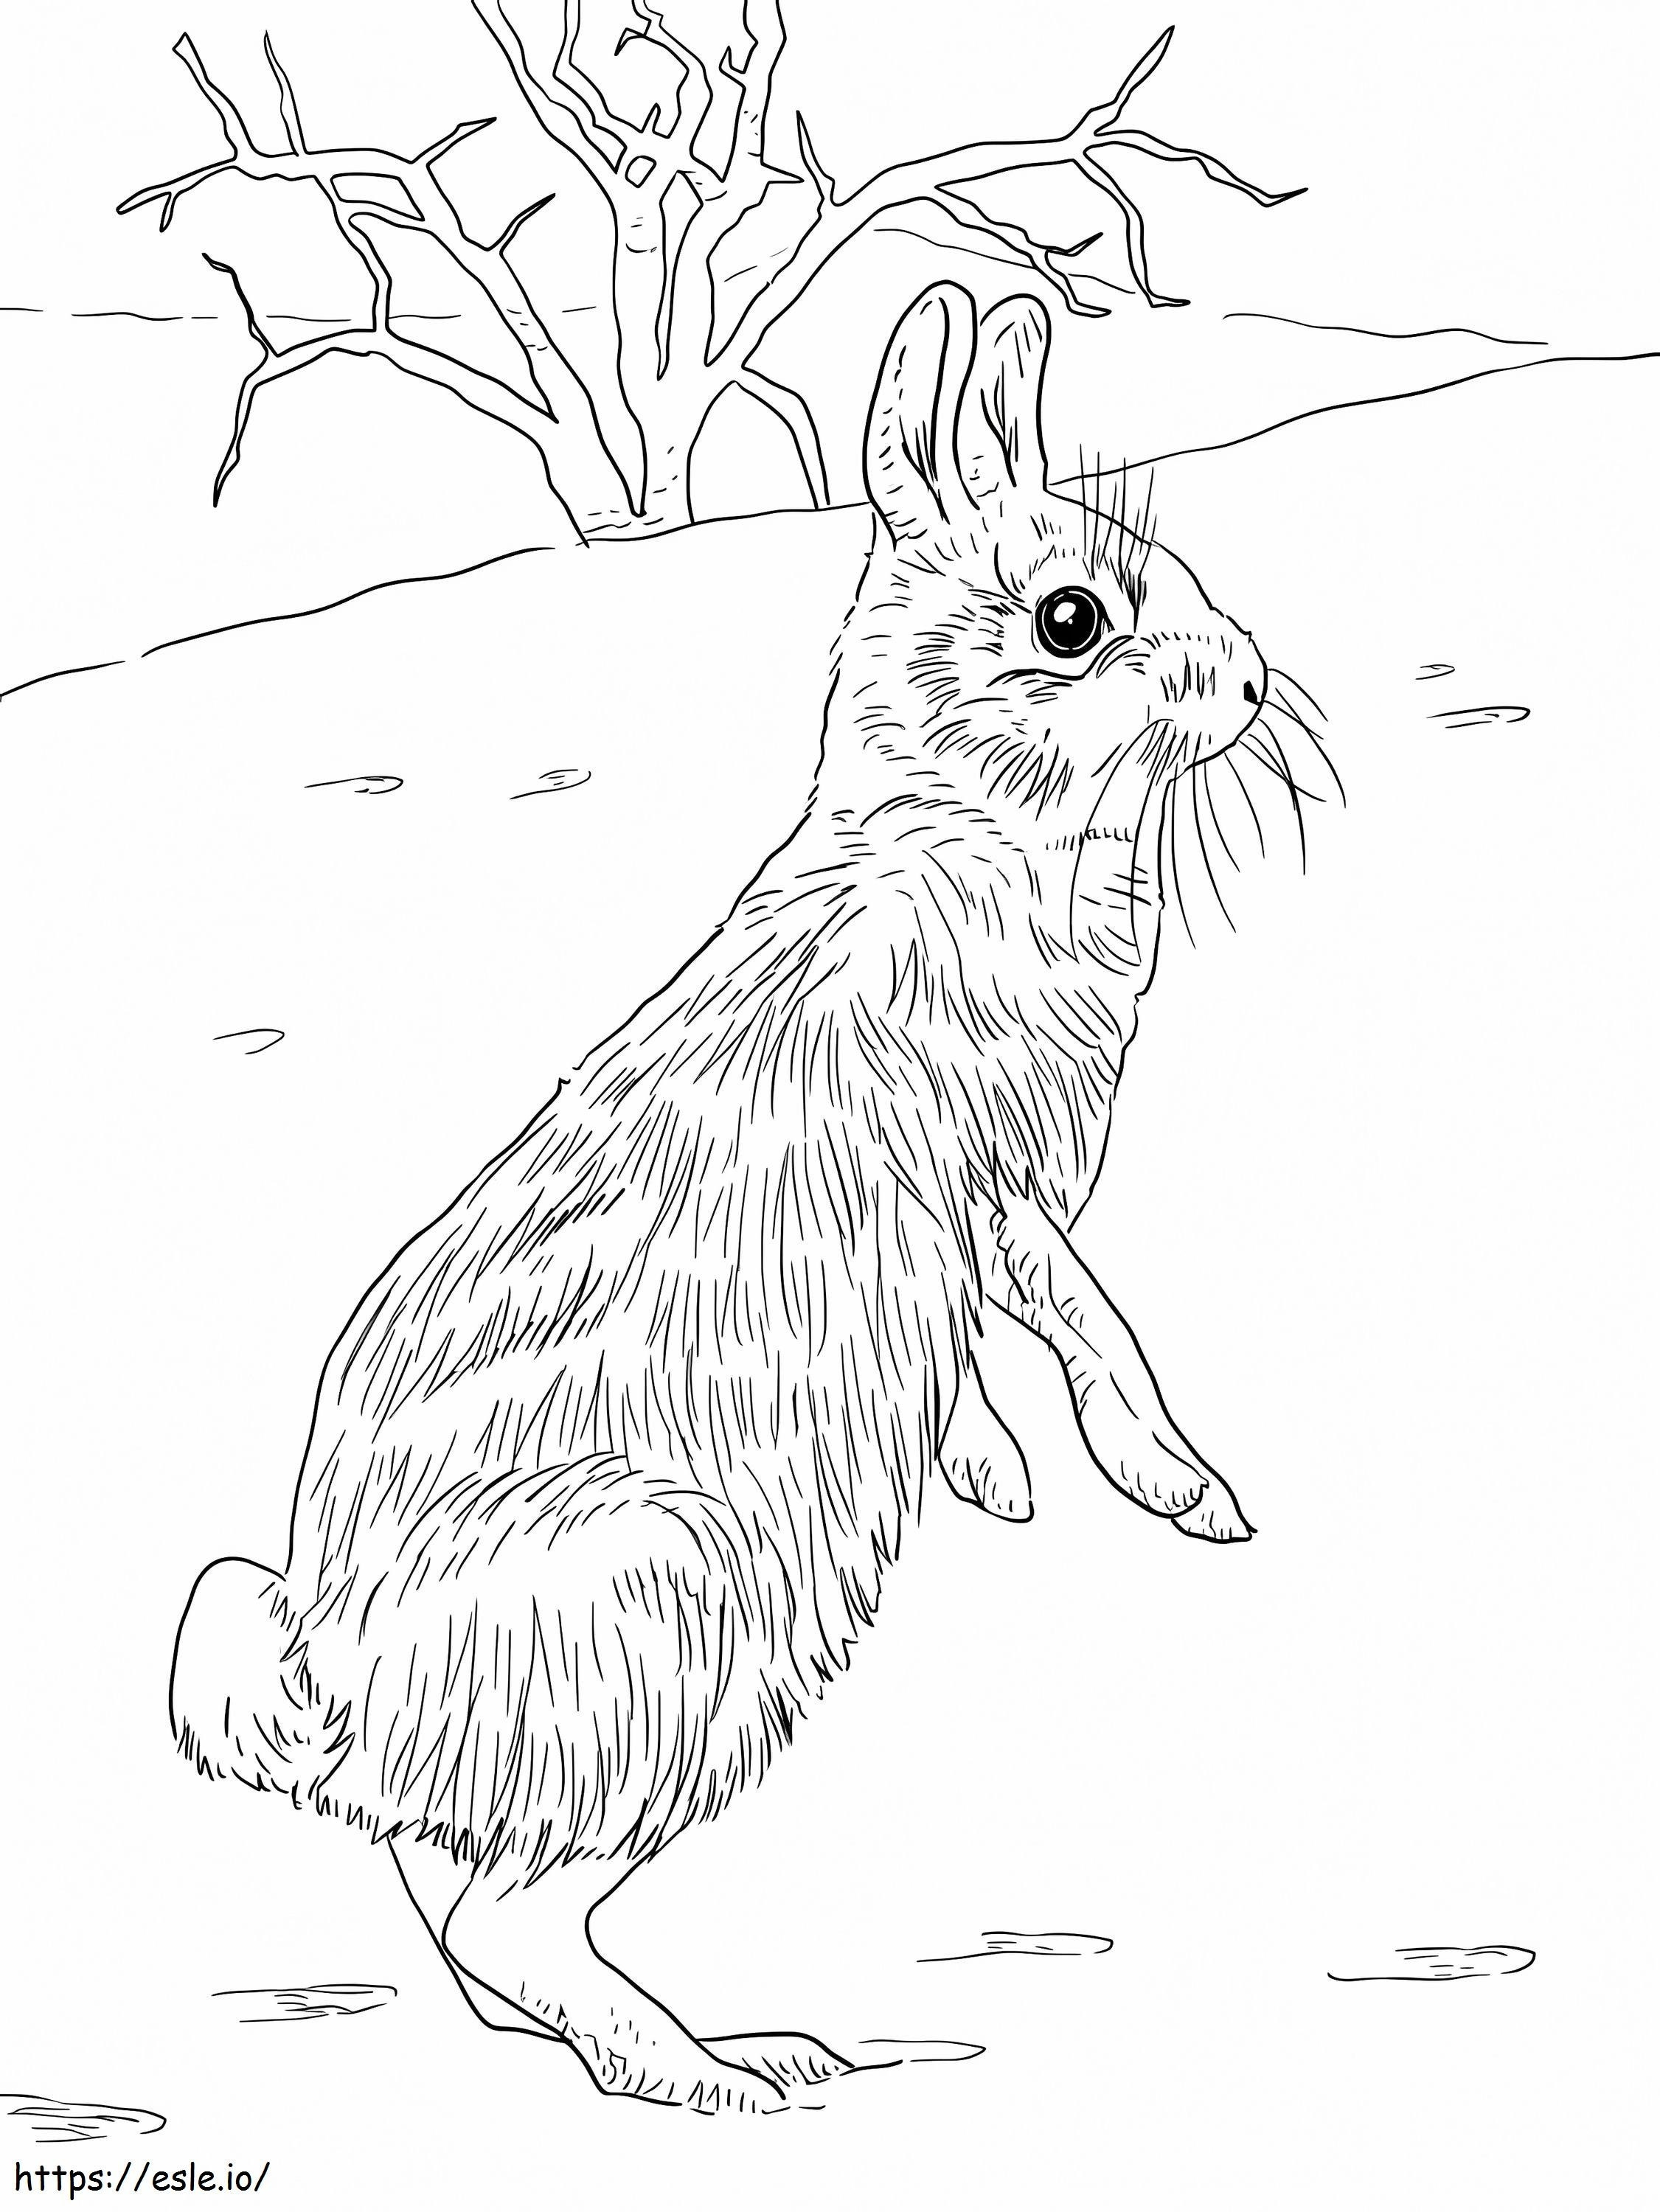 Coelho de coelho para colorir